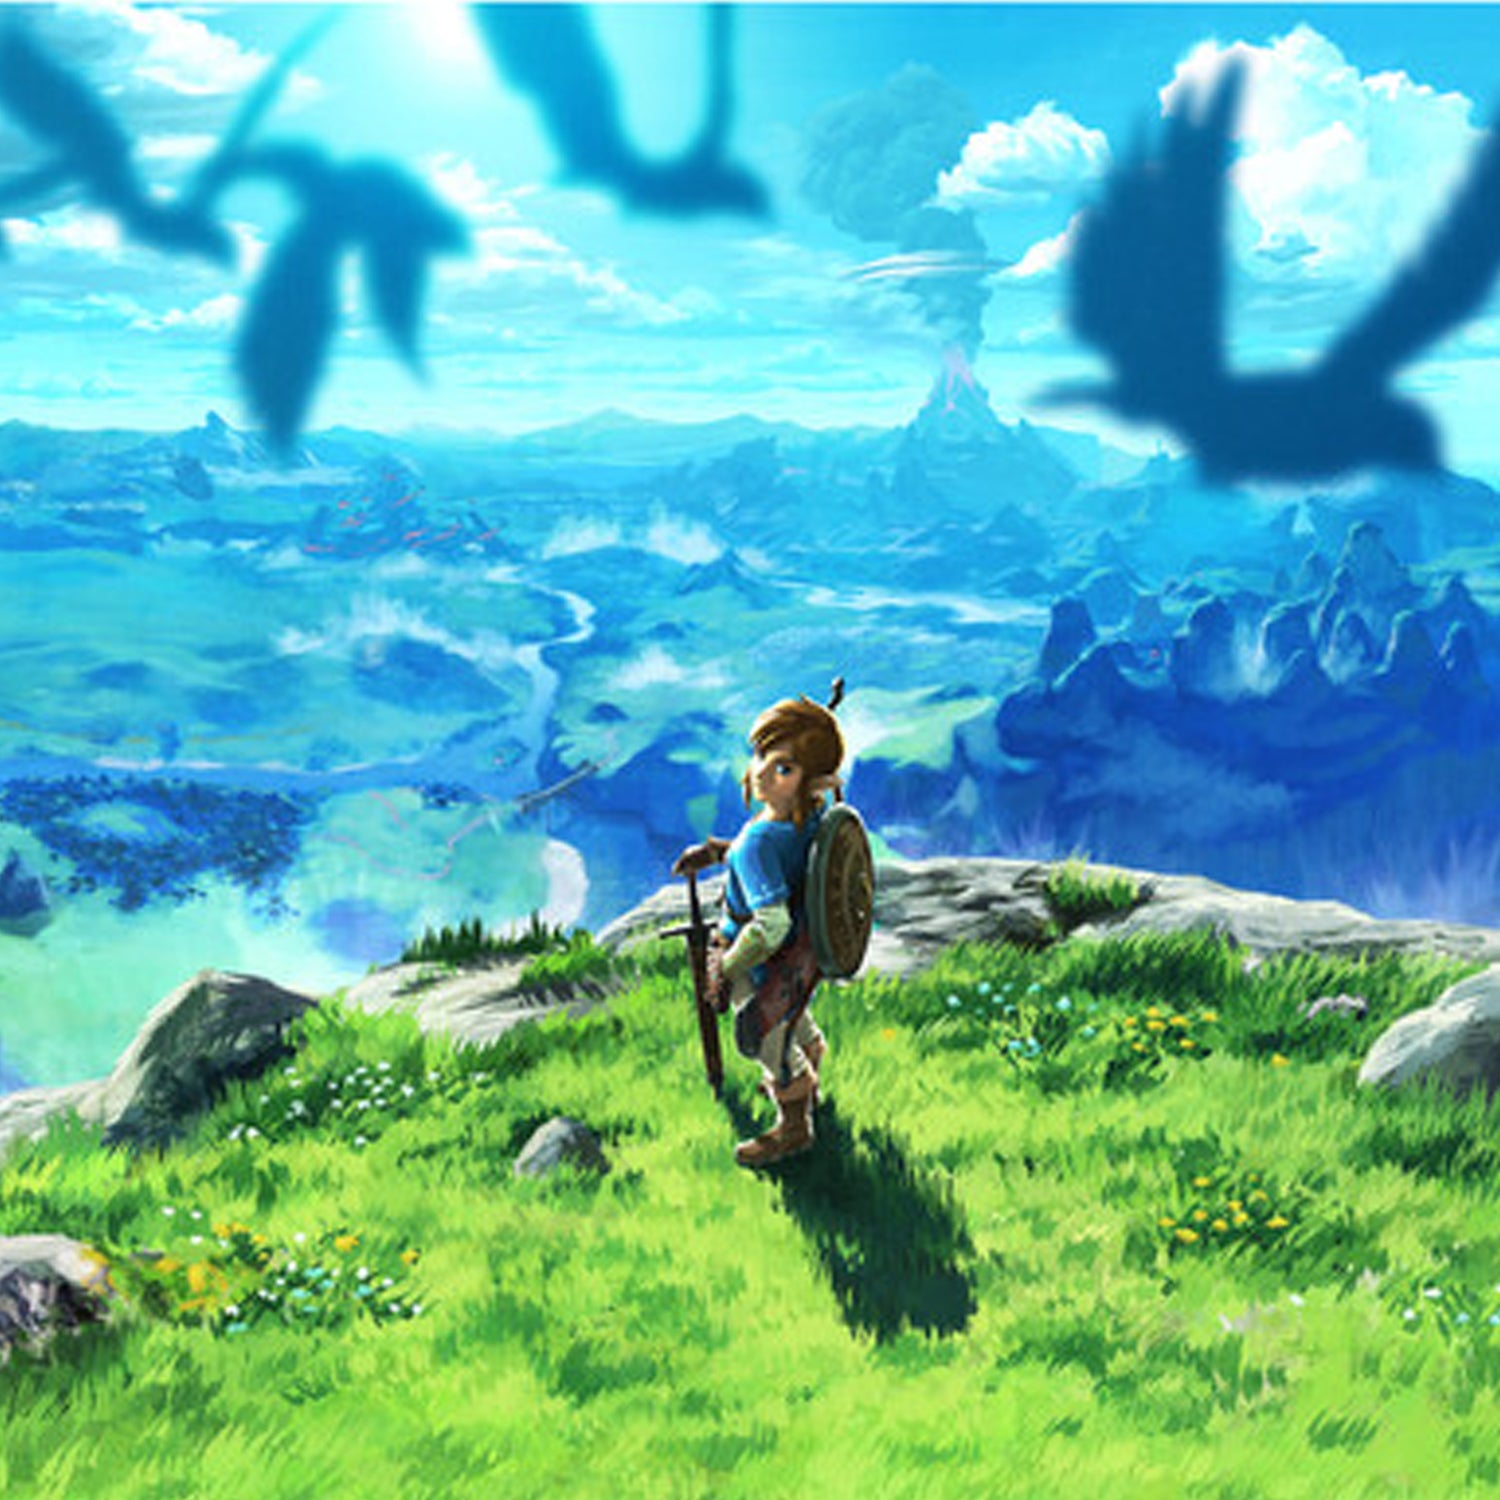 The Legend of Zelda: Links Awakening + The Legend of Zelda: Breath of the Wild - 2 Game Bundle - Nintendo Switch